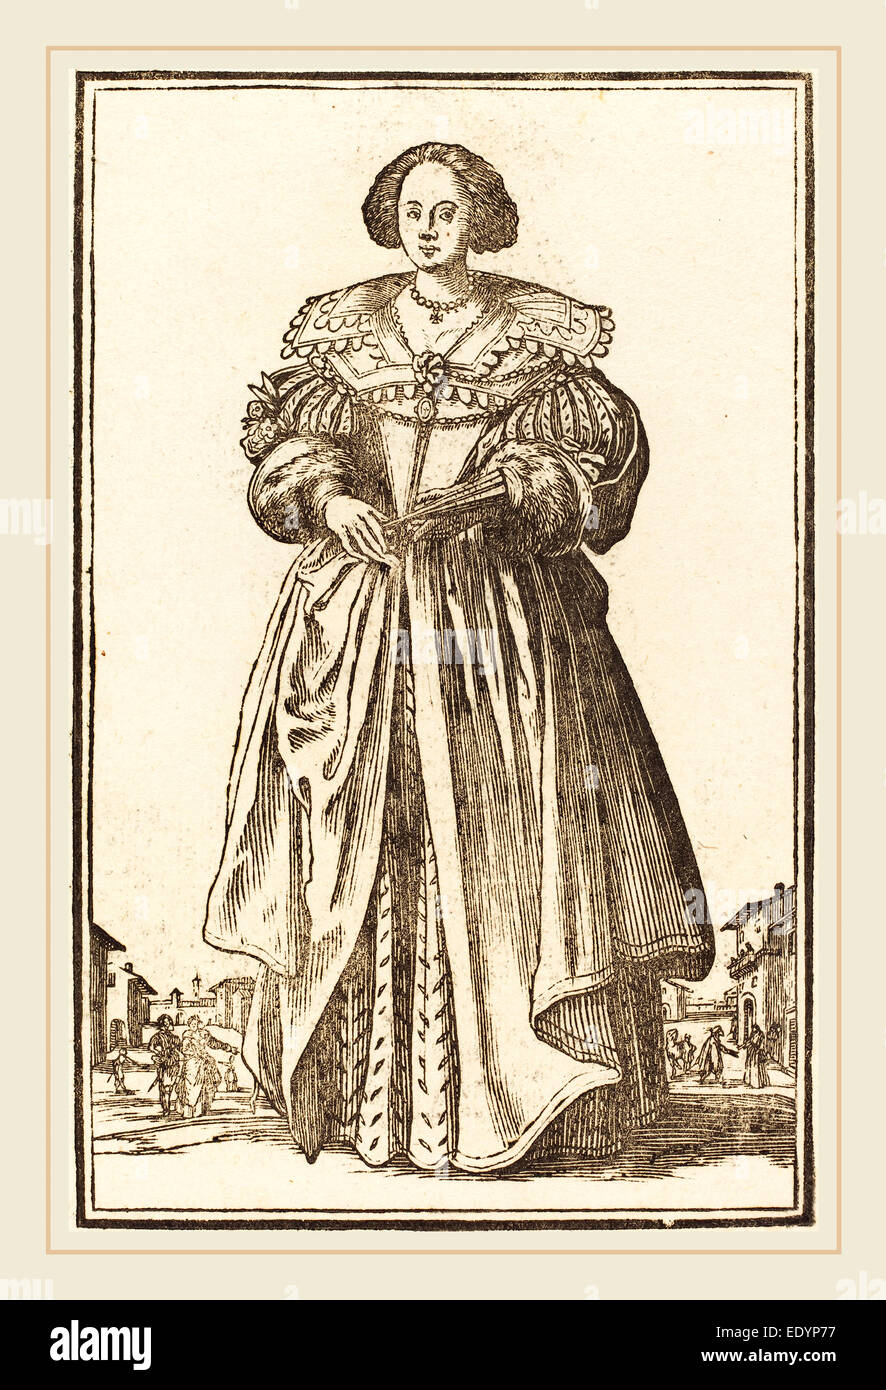 Après Jacques Callot, femme noble avec ventilateur, gravure sur bois Banque D'Images